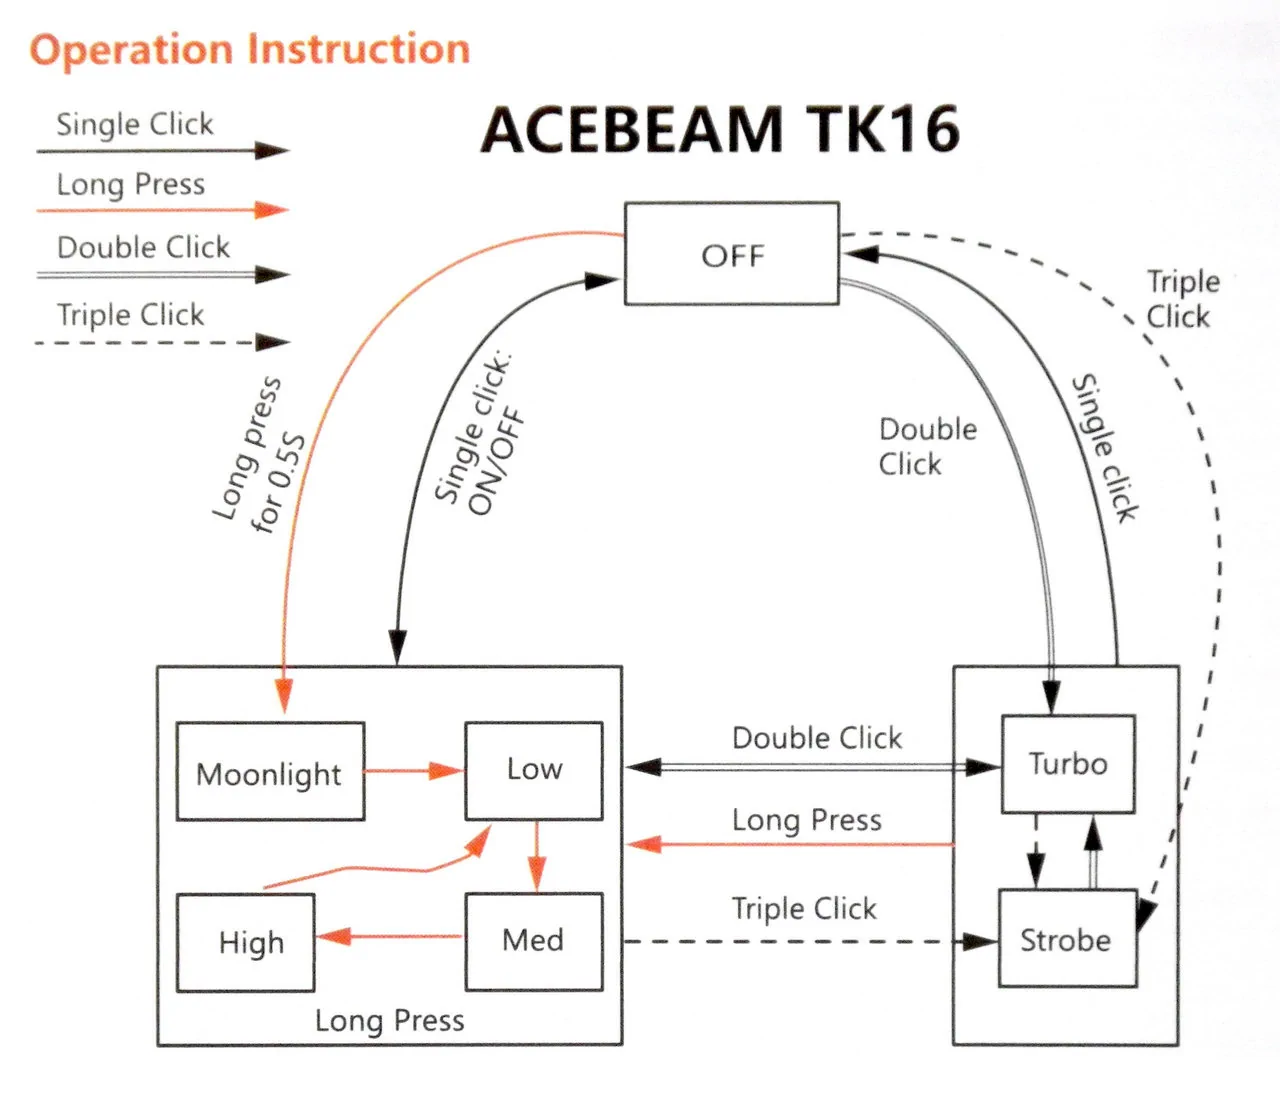 ACEBEAM TK16-AL / operation